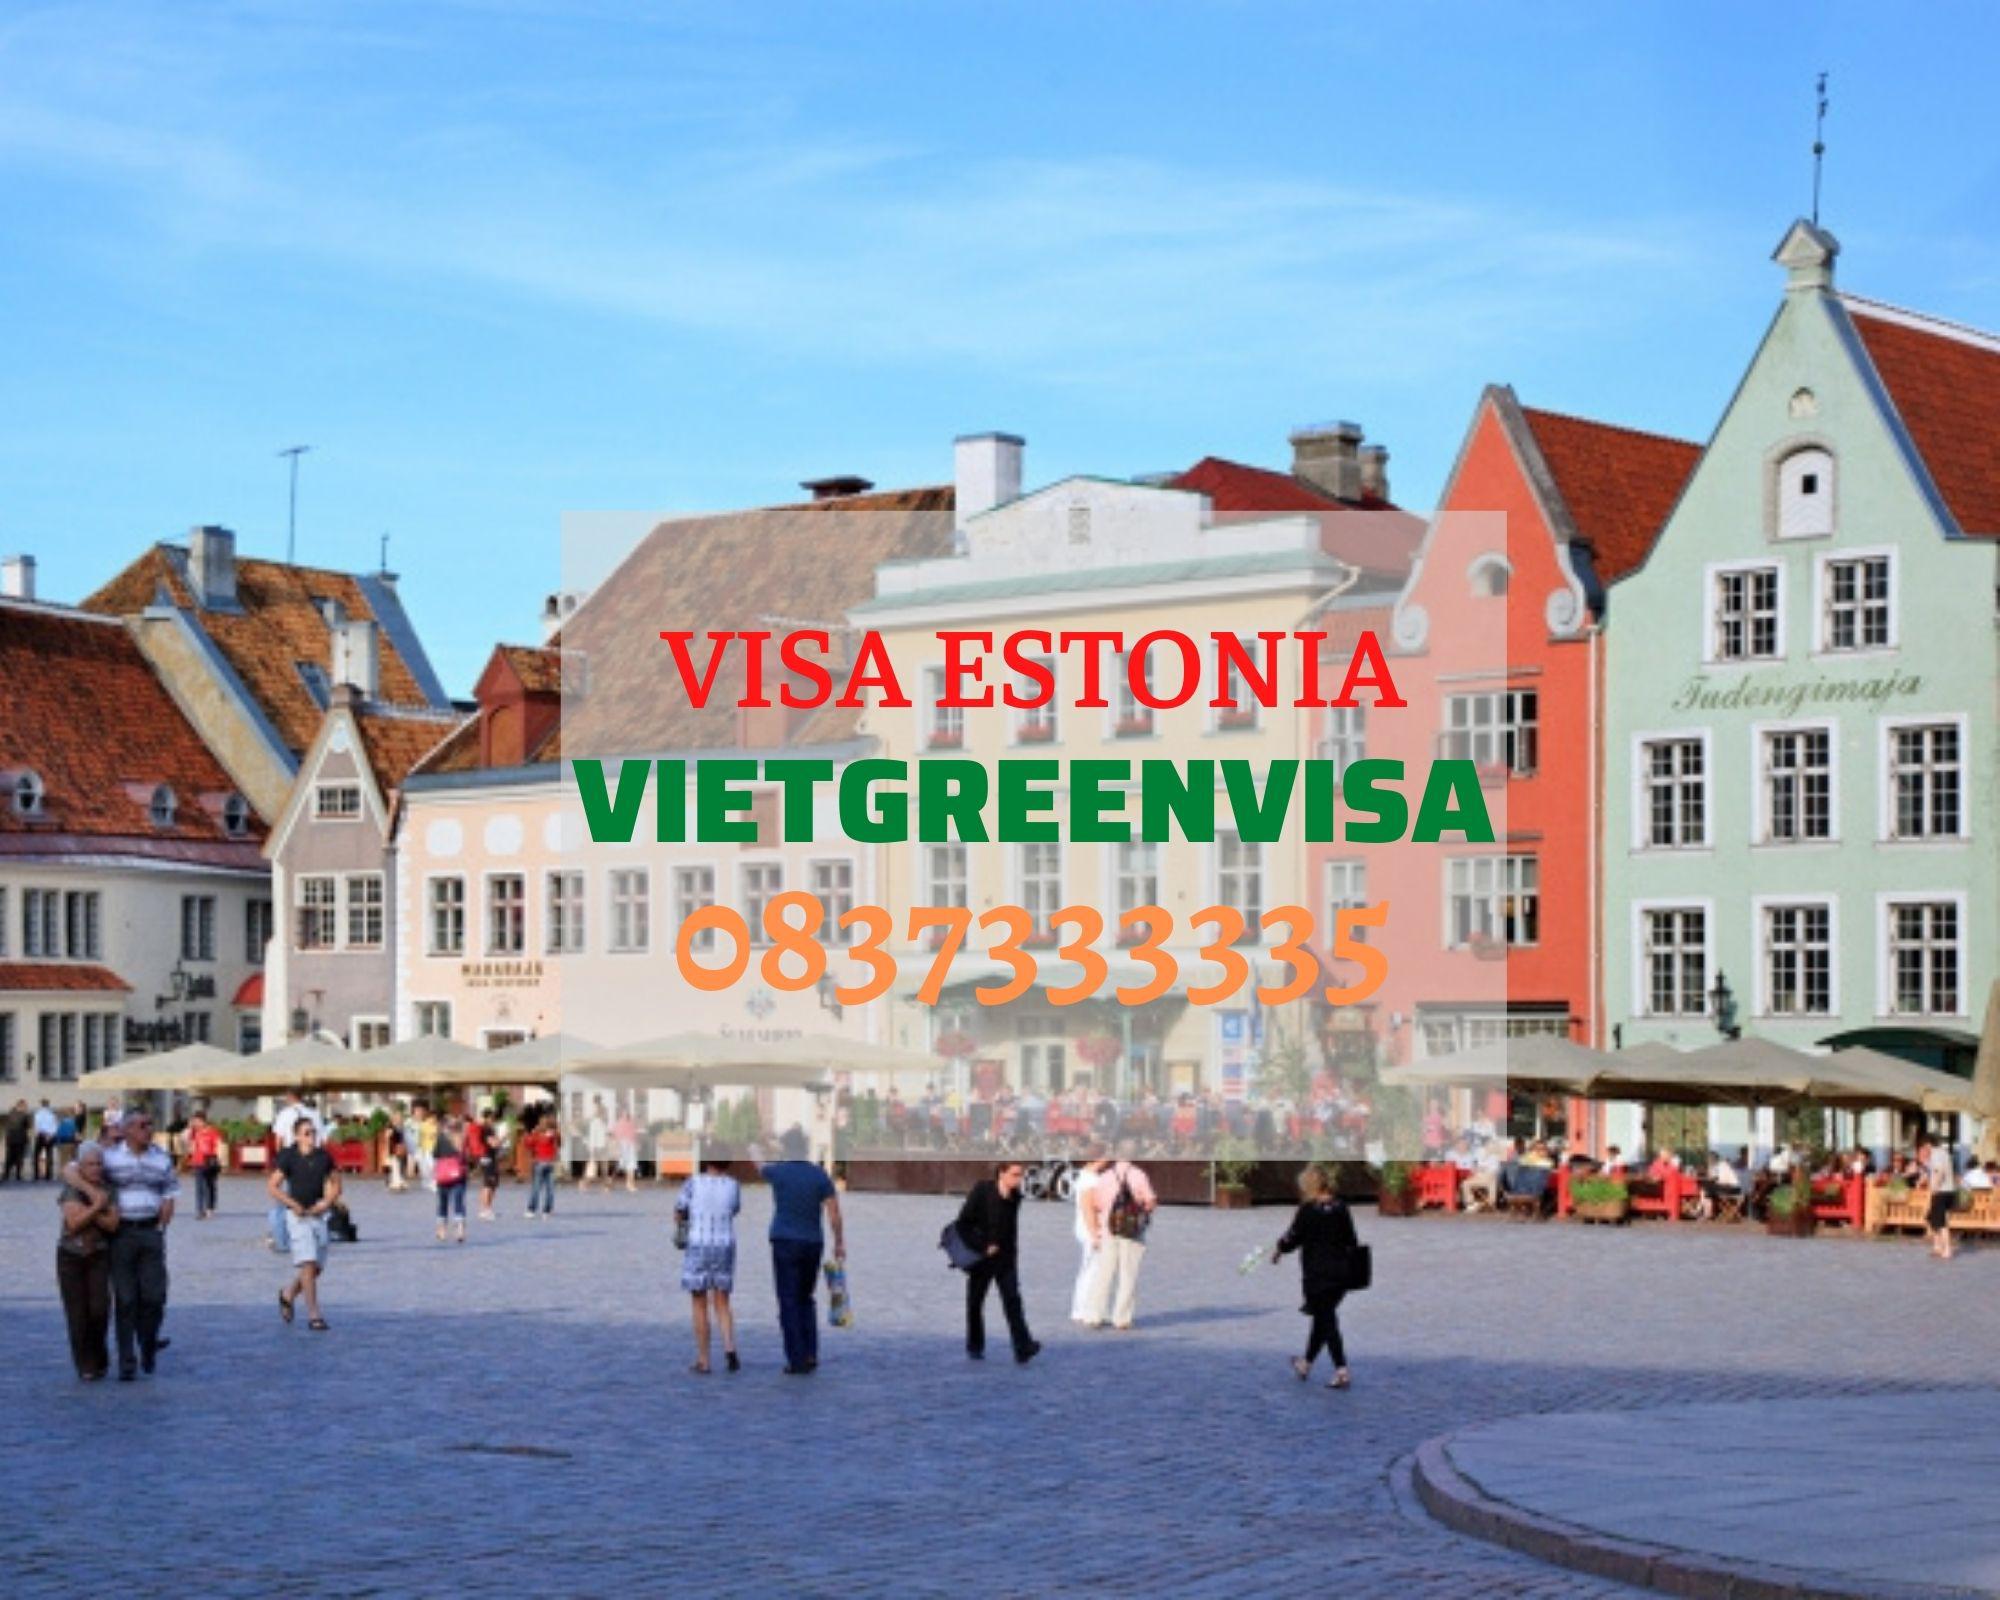 Hồ sơ và thủ tục xin visa Estonia đi công tác